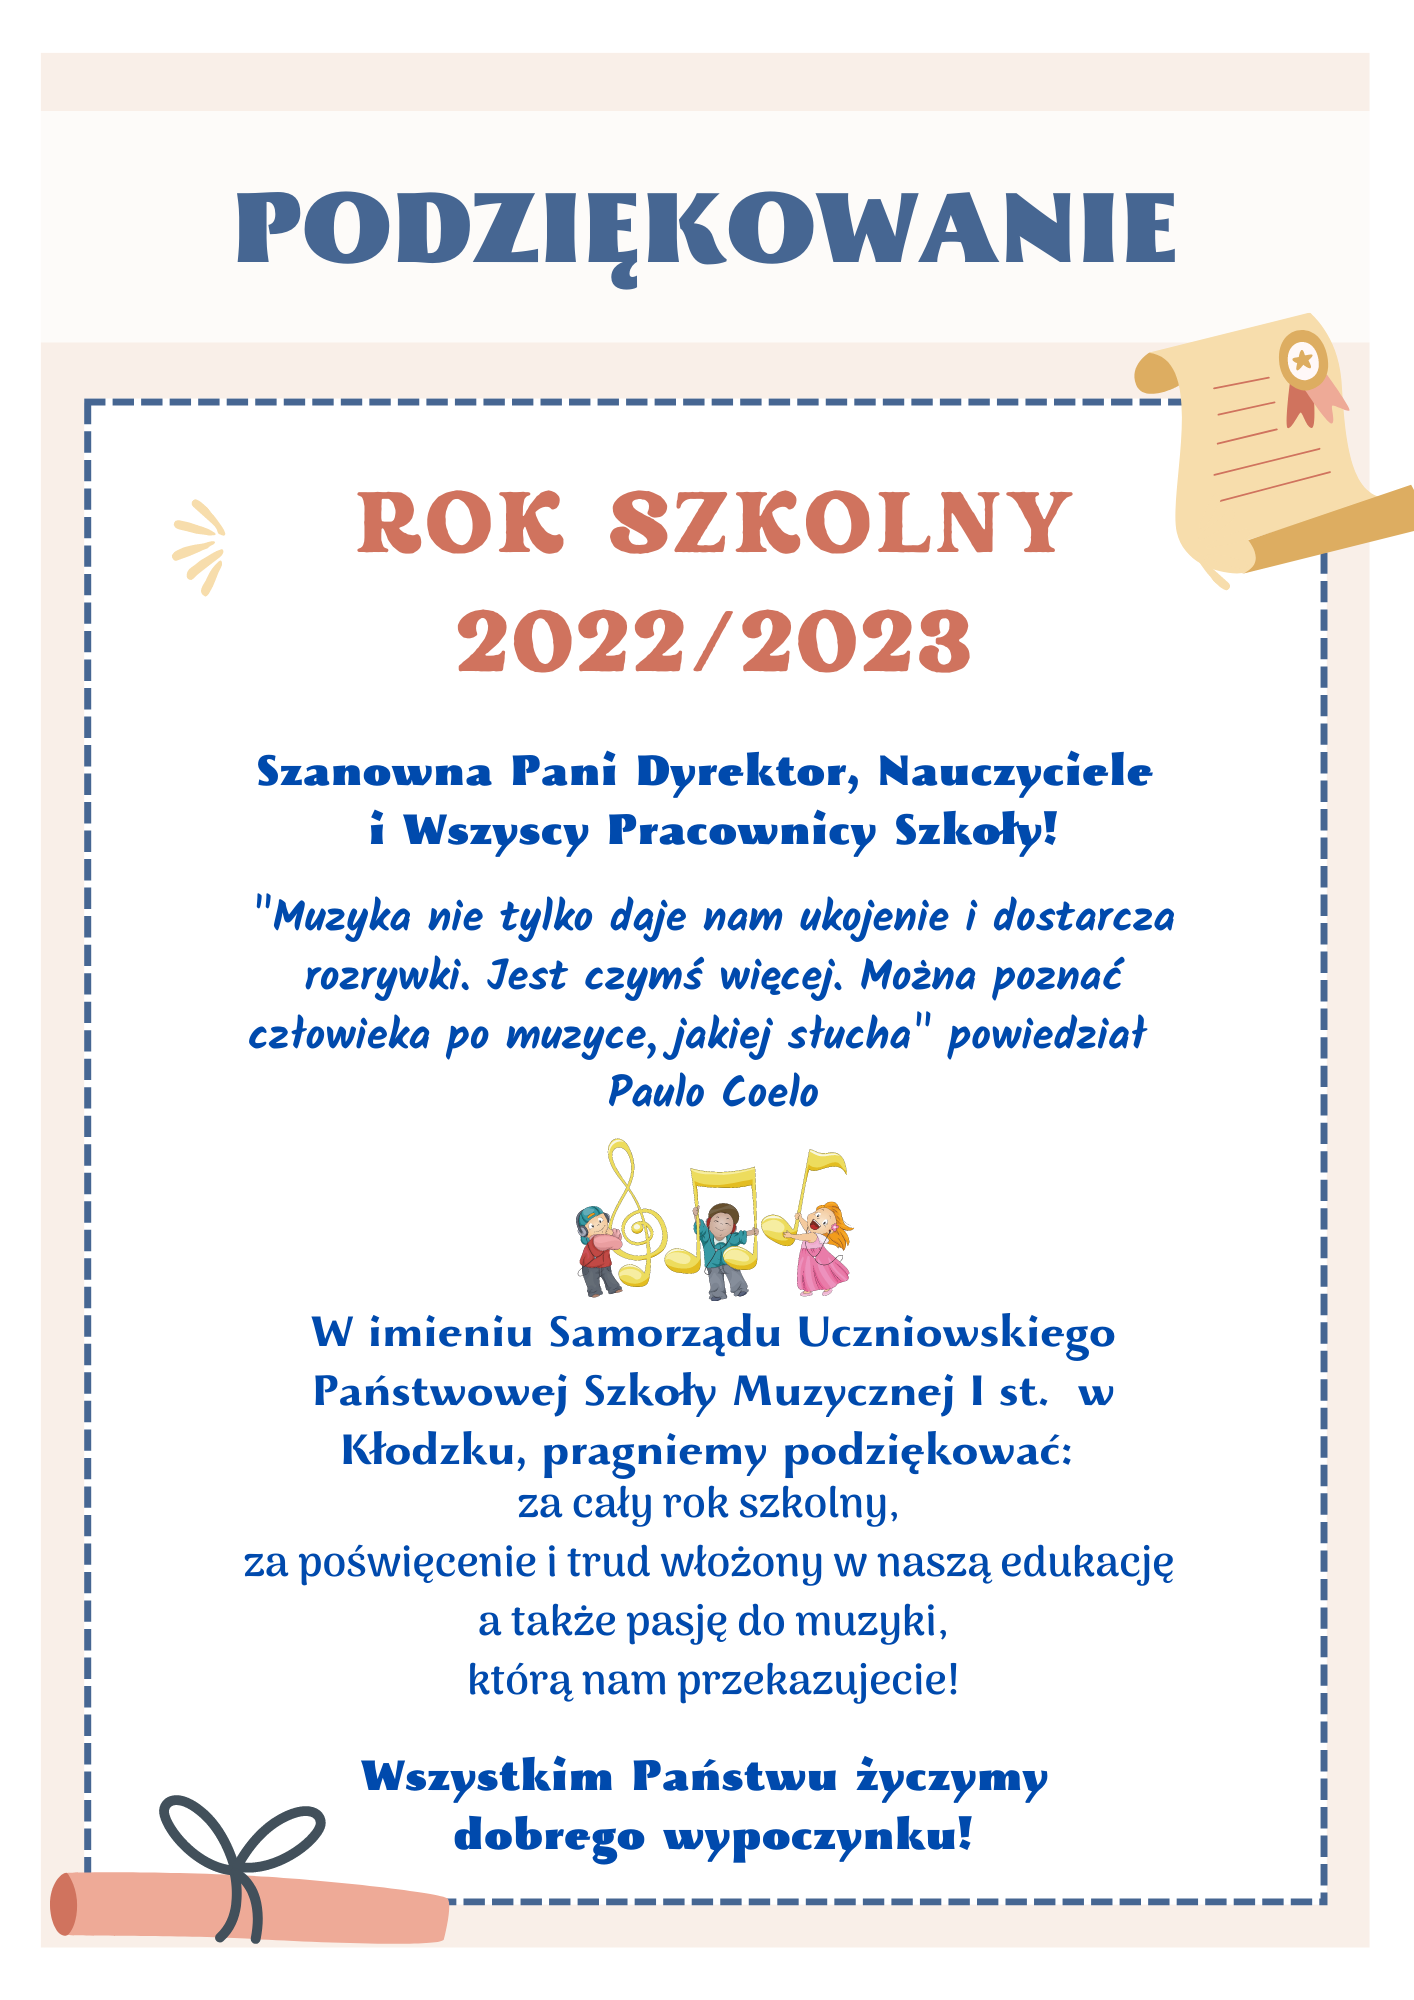 Plakat na białym tle z informacją tekstową dotyczącą podziękowań od Samorządu Uczniowskiego za cały rok szkolny 2022-2023